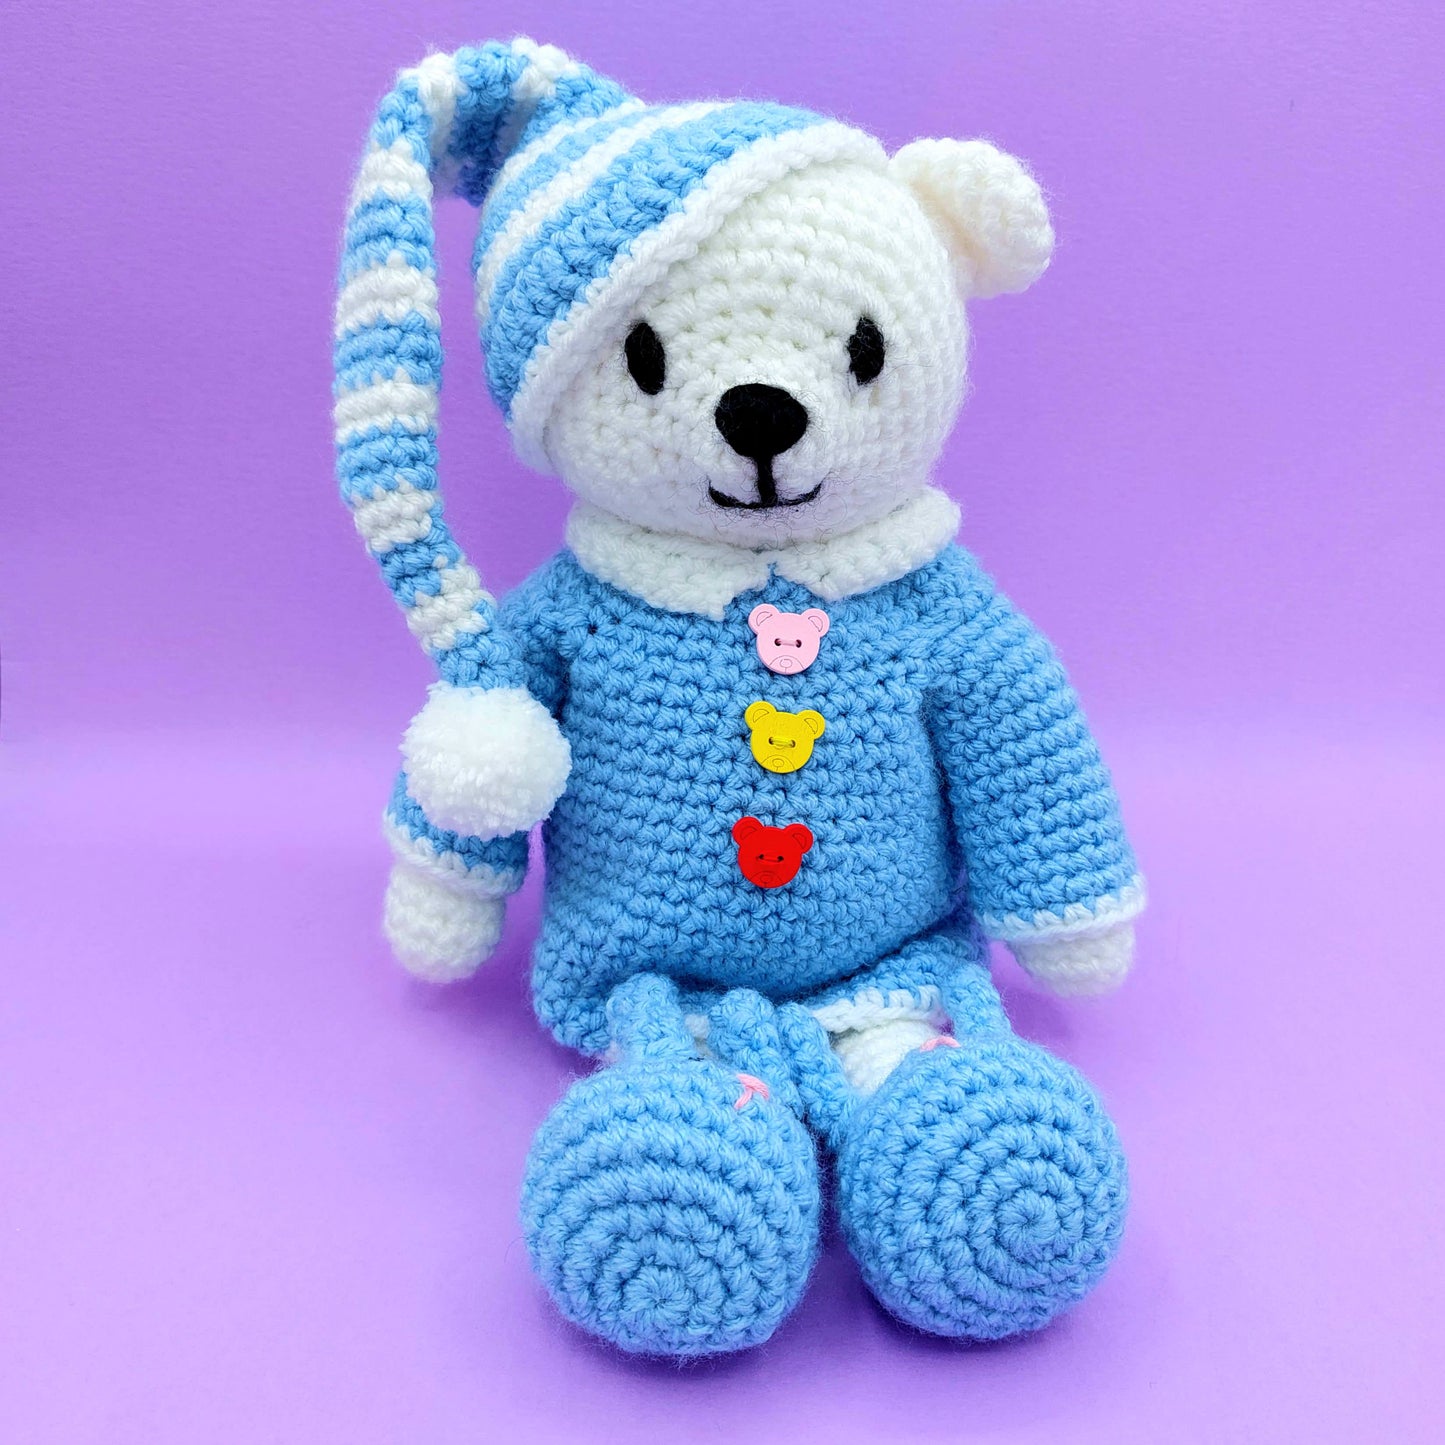 Bobby the Bedtime Bear Crochet kit